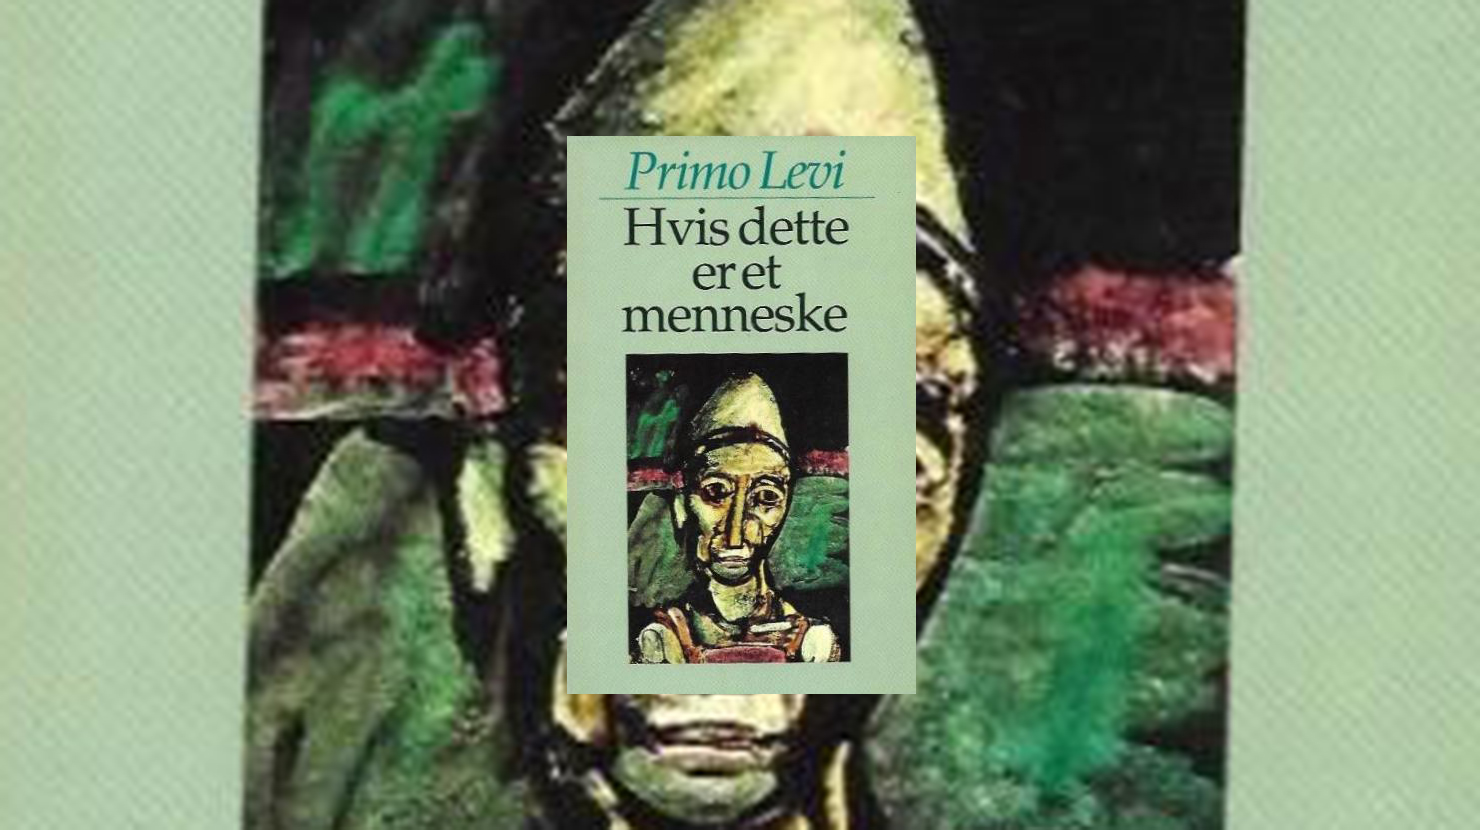 Læs en klassiker - dette er er menneske" af Primo Levi | Greve Bibliotek